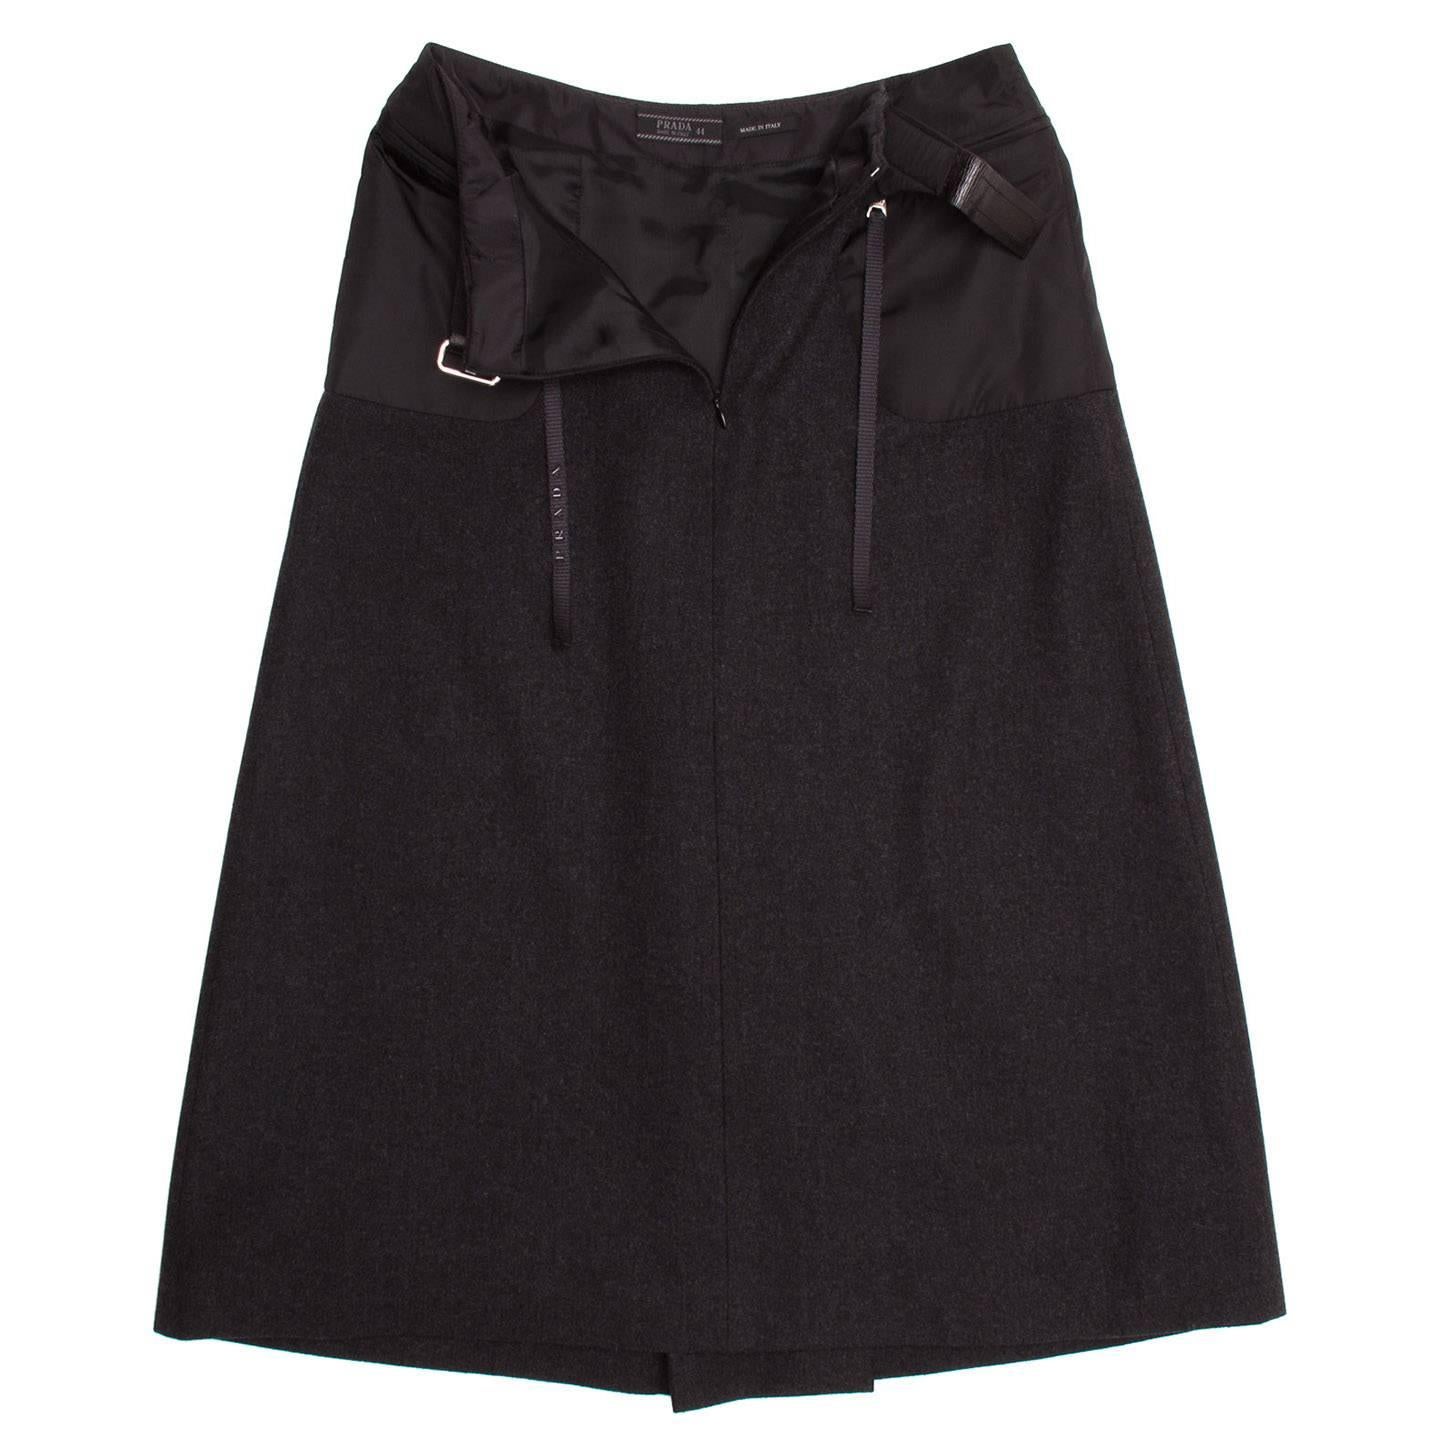 charcoal grey skirt